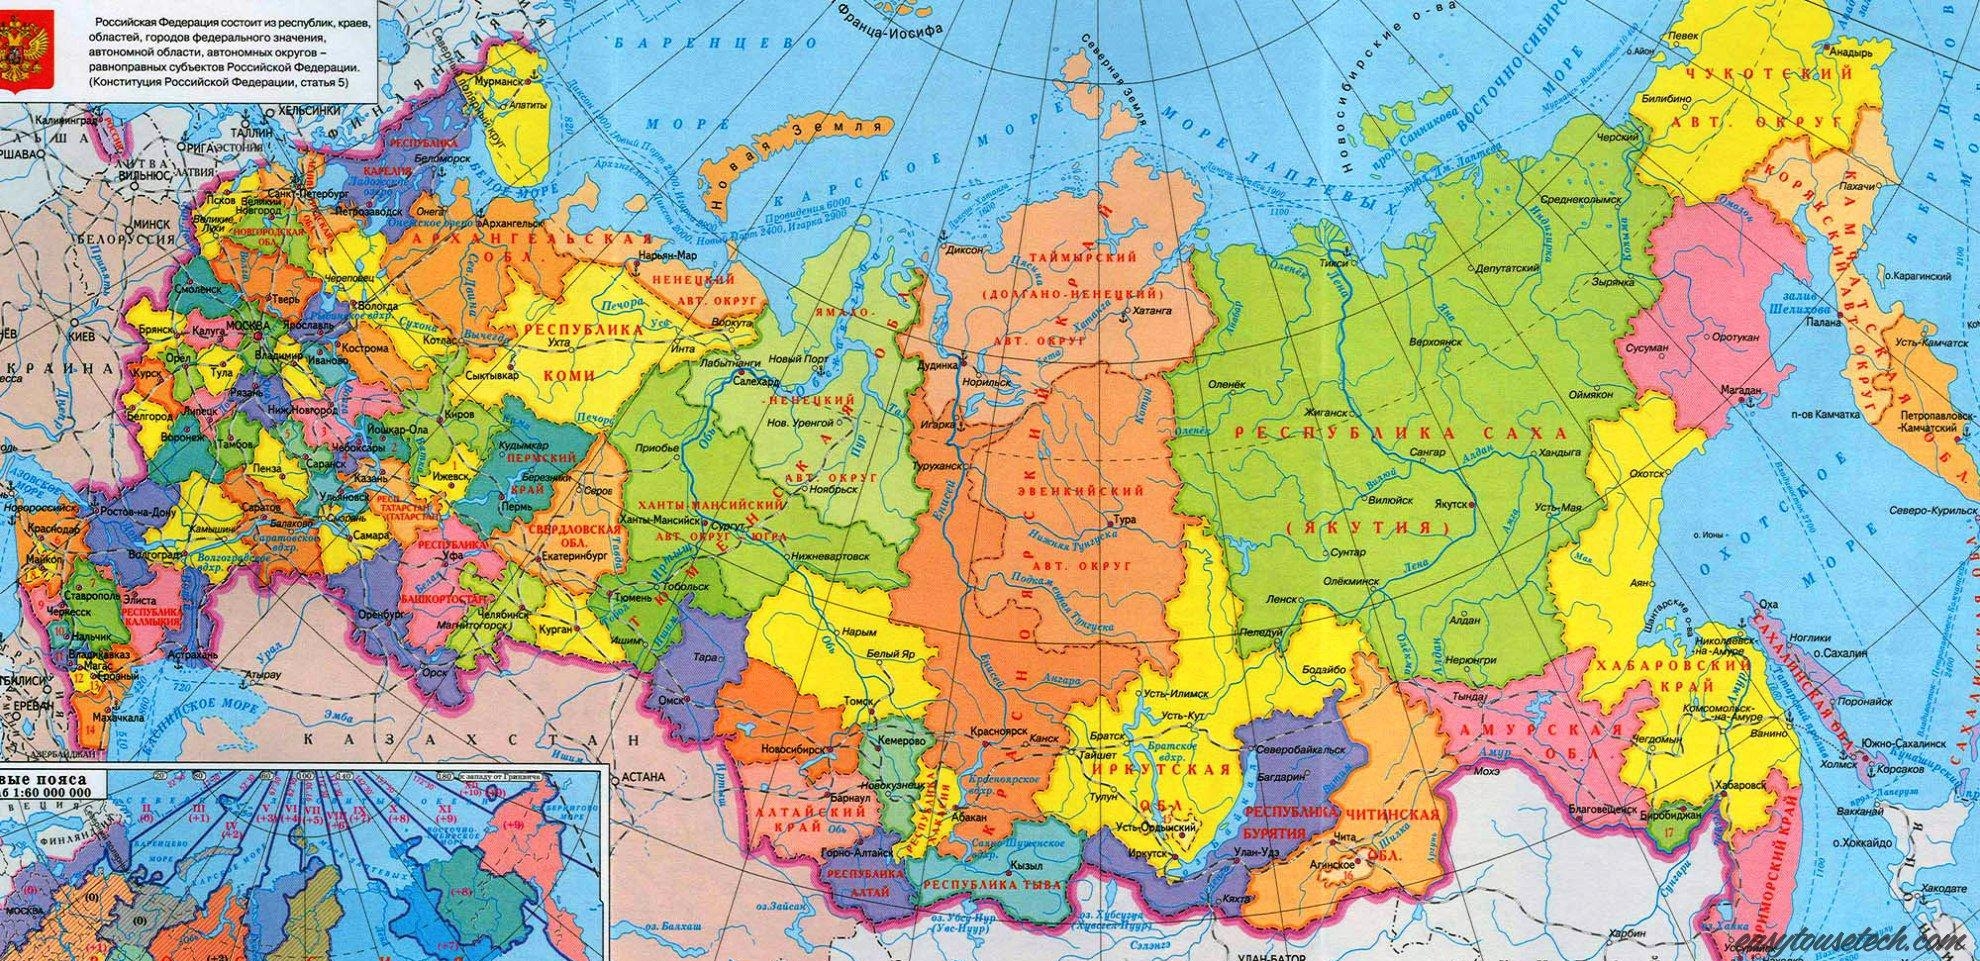 Россия имеет федеративное устройство республик, областей, краев, автономных образований